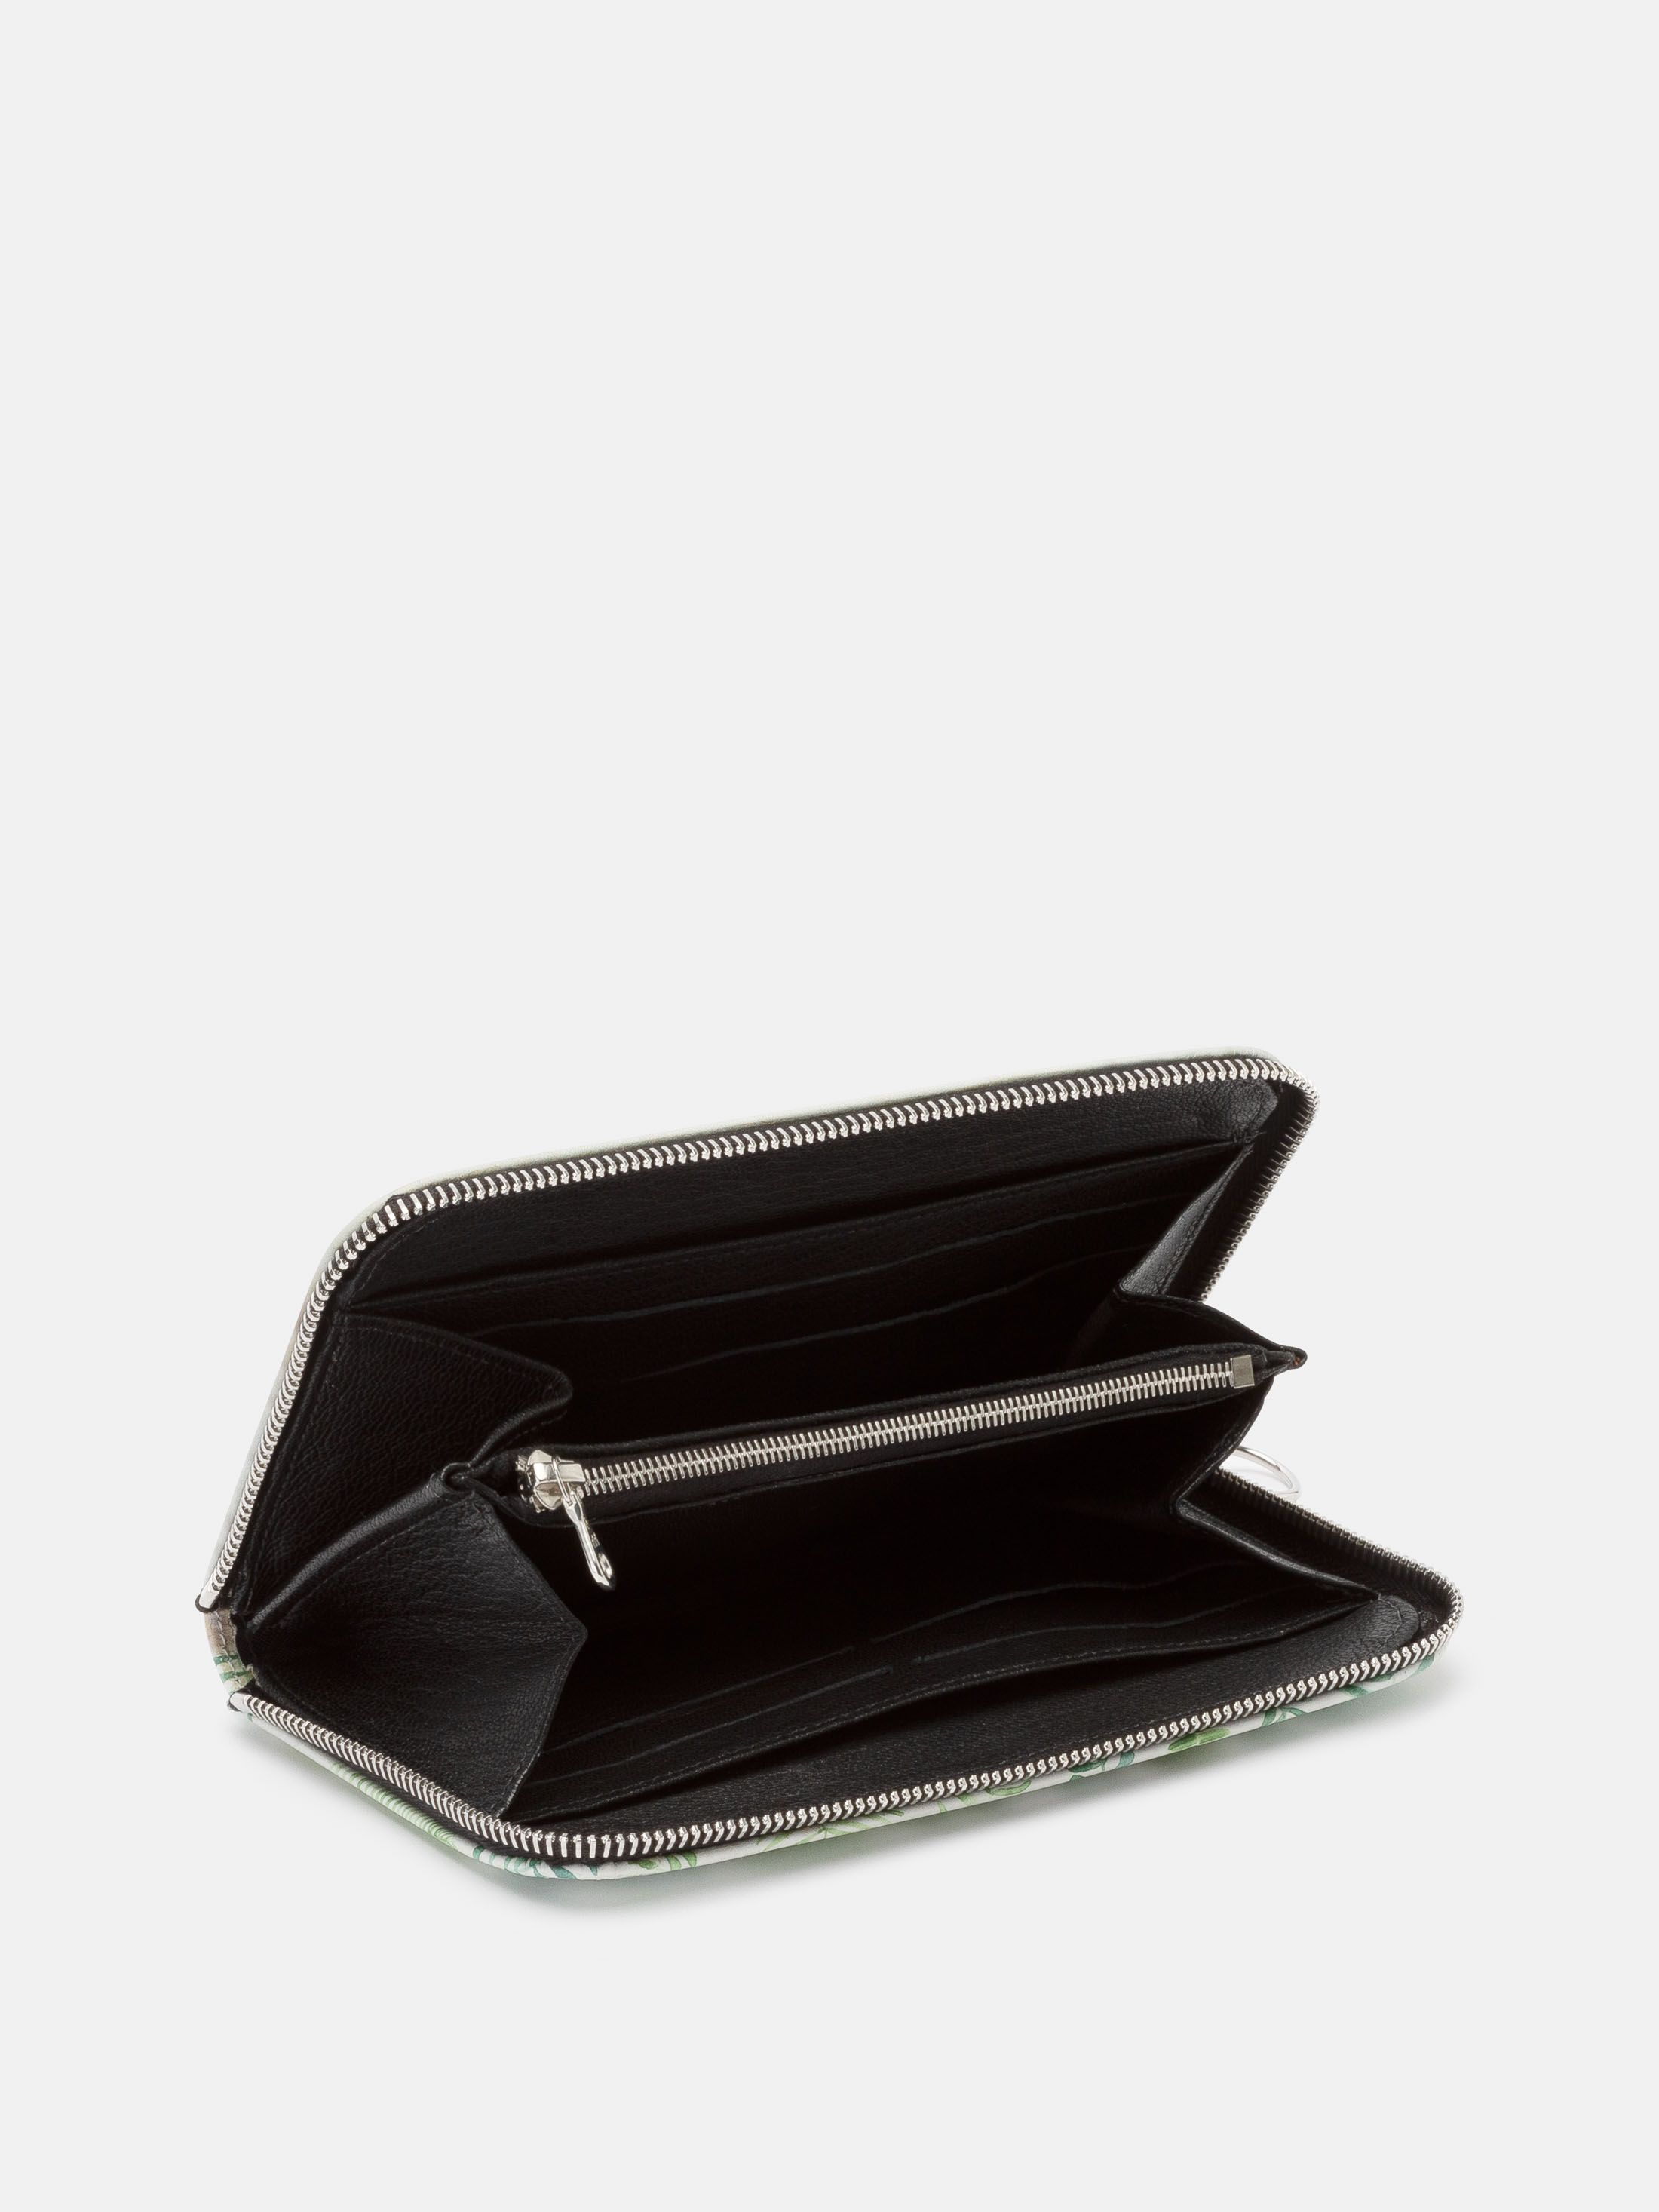 leather clutch purse customized zipper